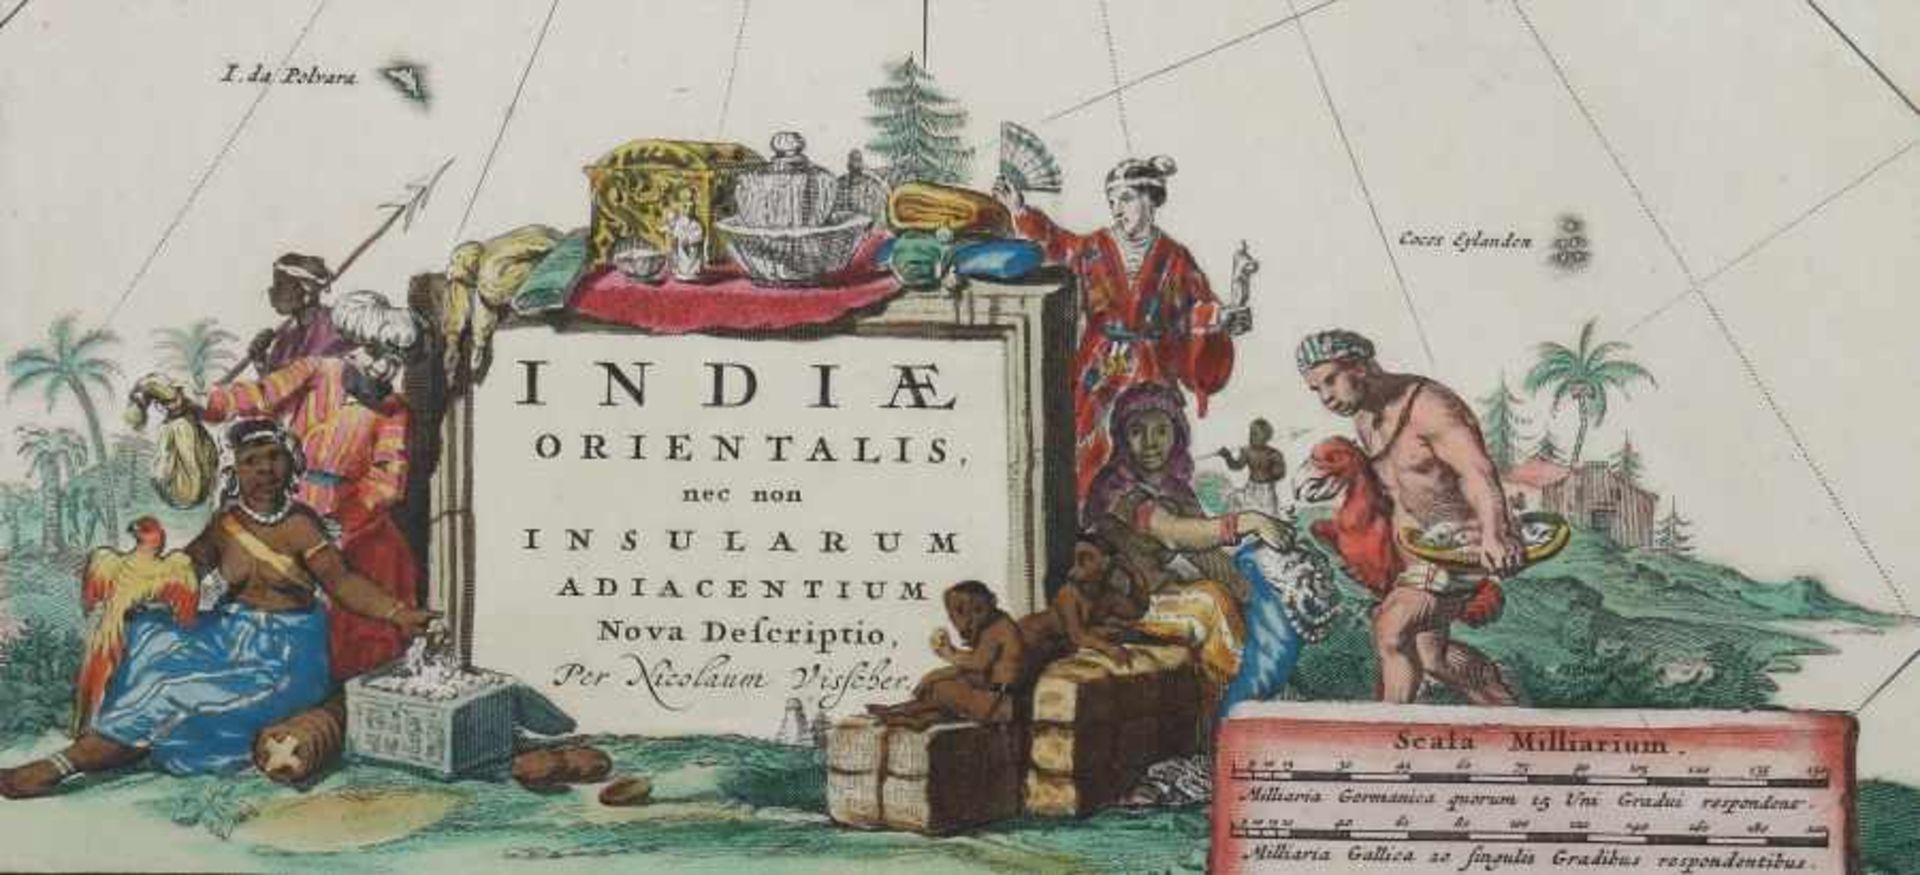 Visscher, Nicolas 1618 - 1709, Kupferstecher und Verleger in Amsterdam. "Indiae orientalis. Nec - Image 2 of 3